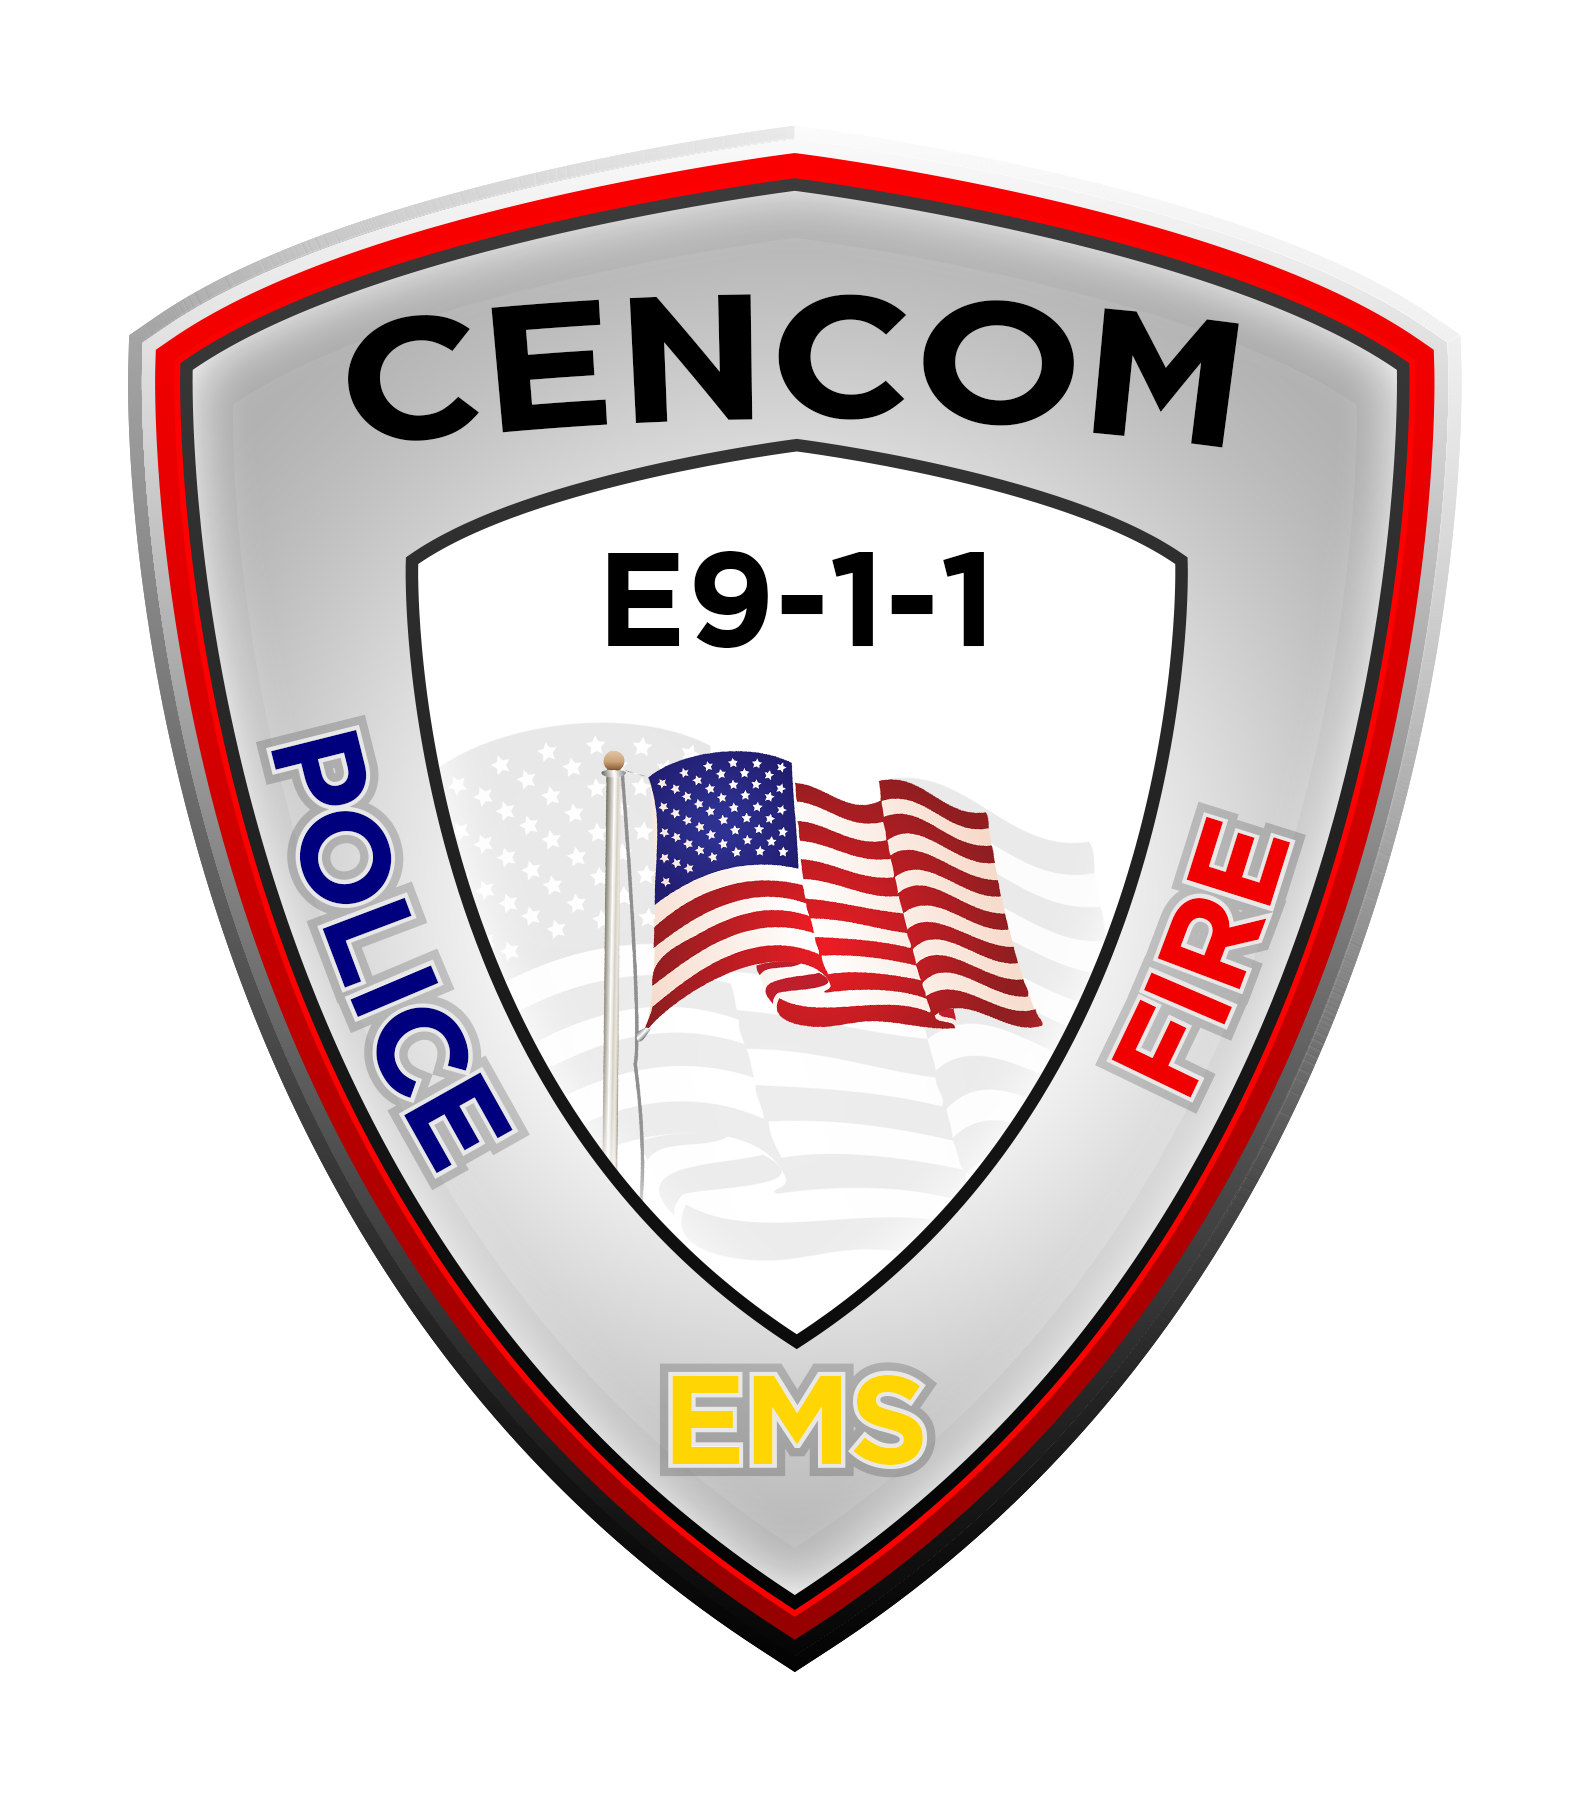 CenCom E9-1-1 shield logo